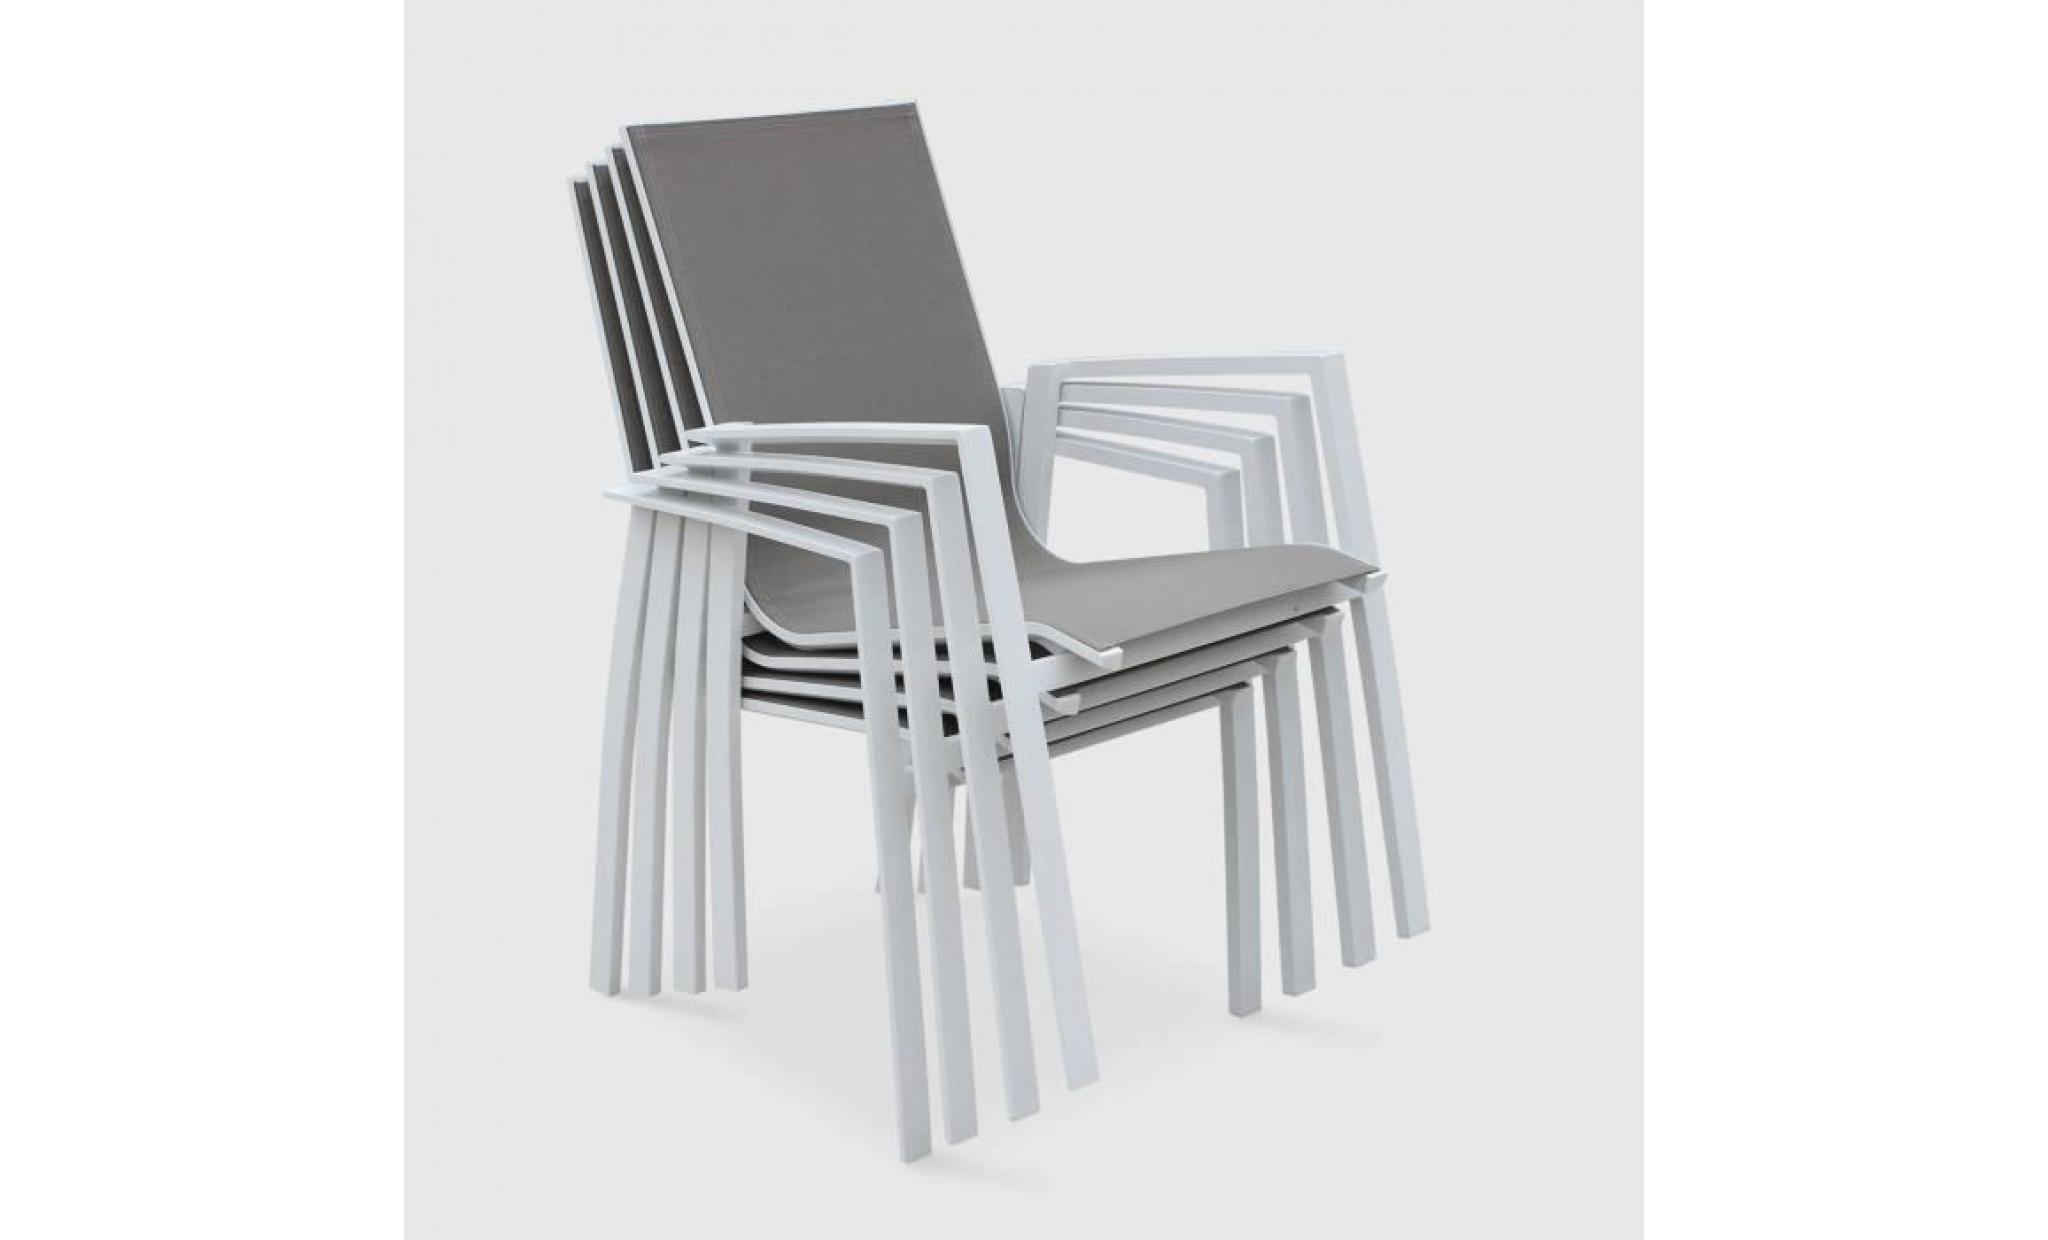 lot de 2 fauteuils   washington taupe   en aluminium blanc et textilène taupe, empilables pas cher